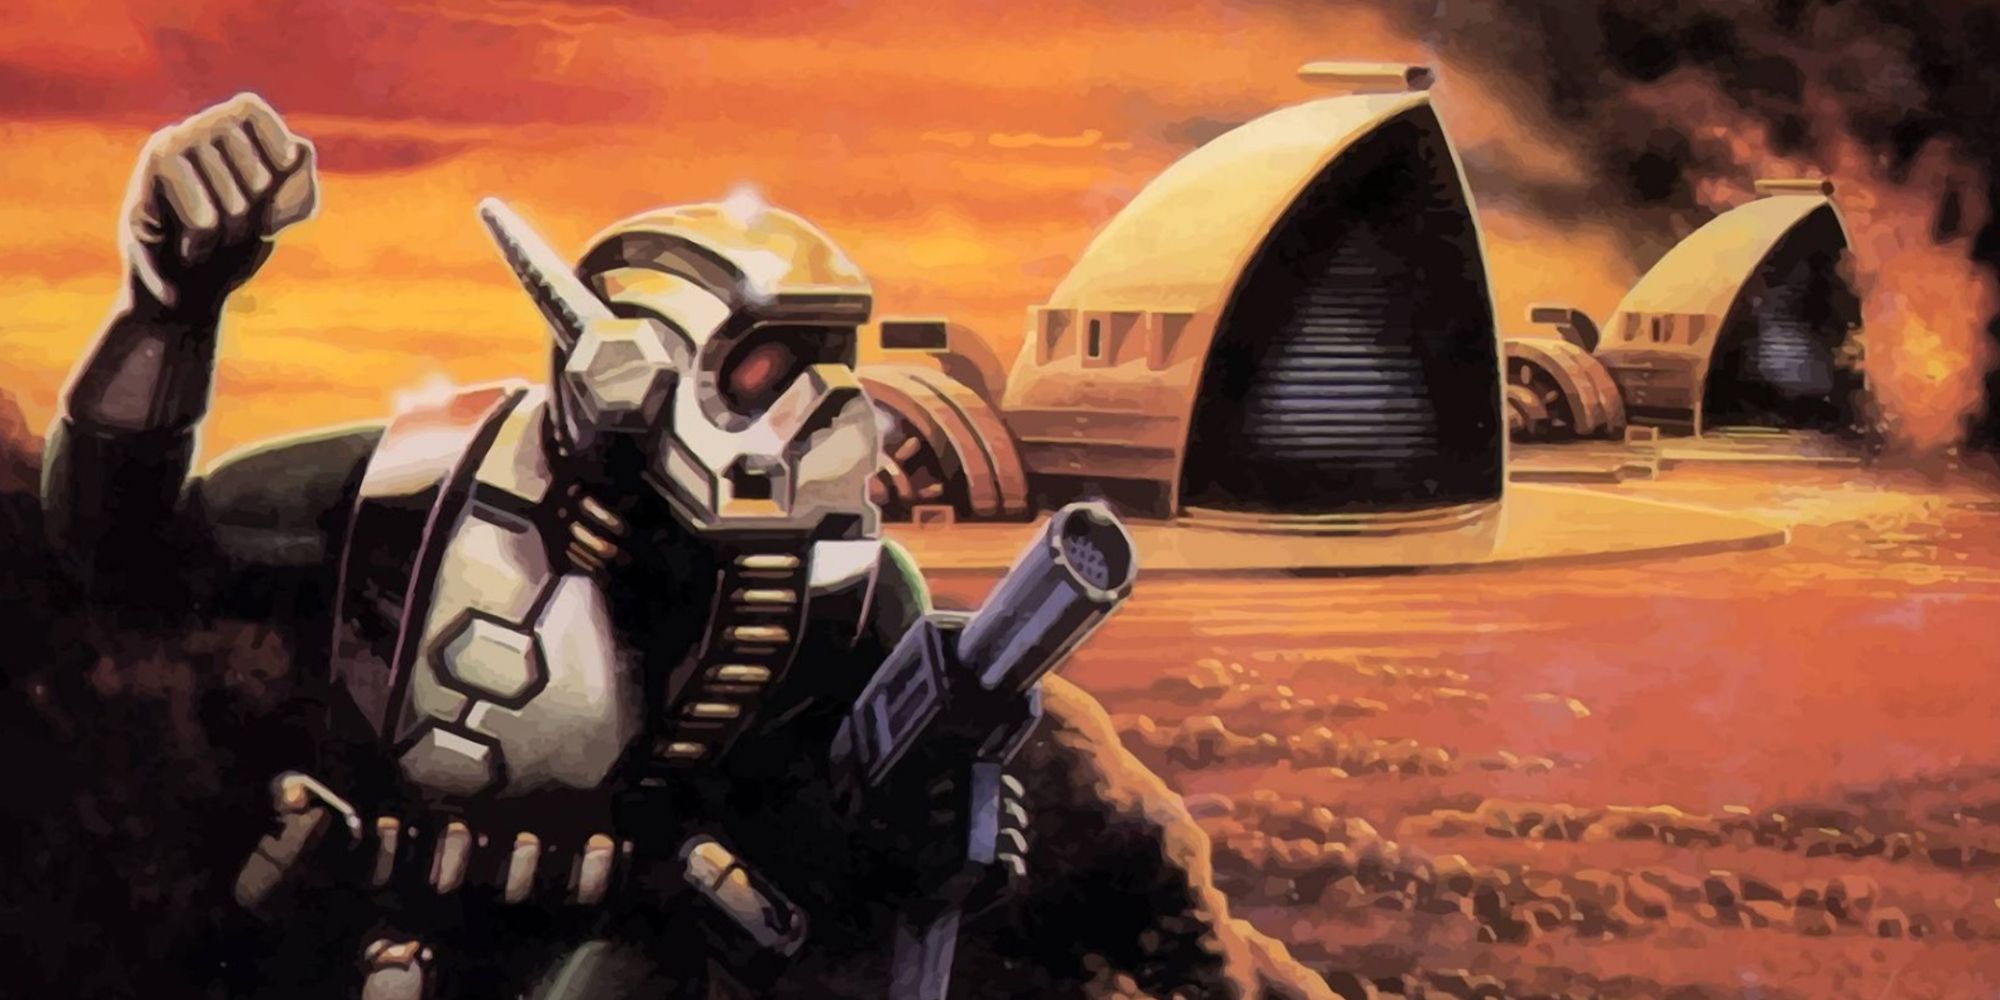 Dune II game image.